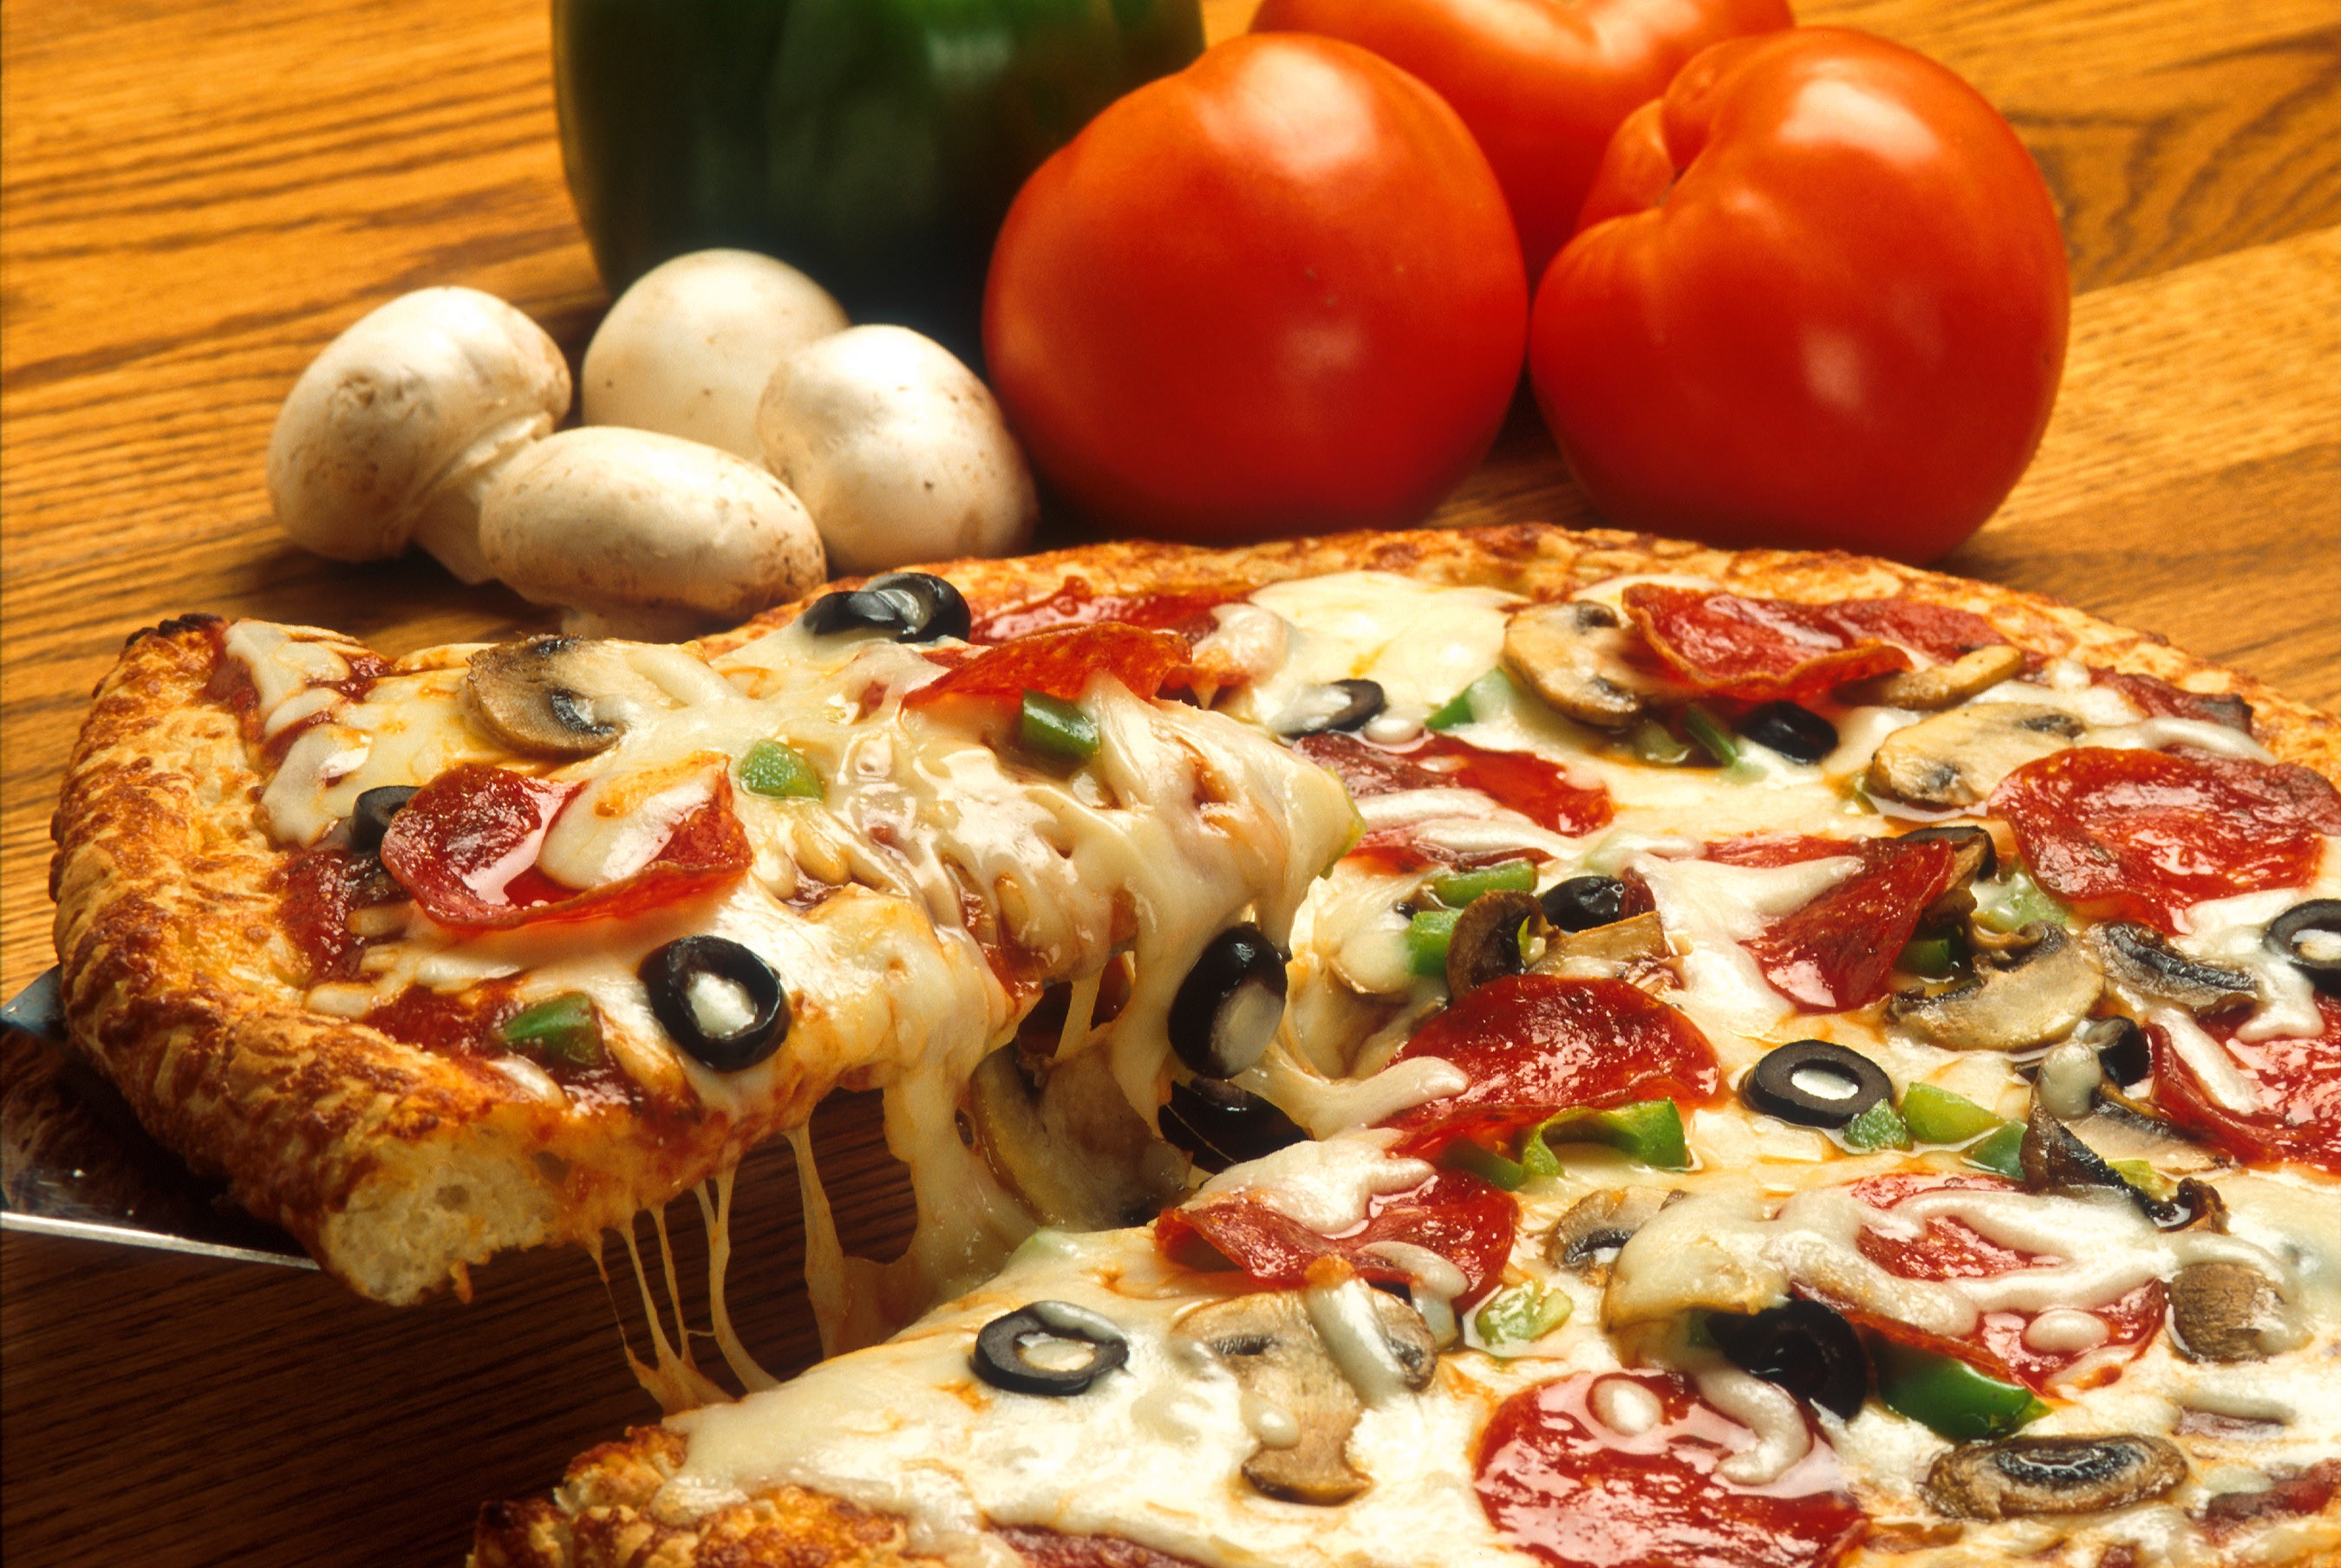 La pizza fa ingrassare: ecco i pericoli che nasconde